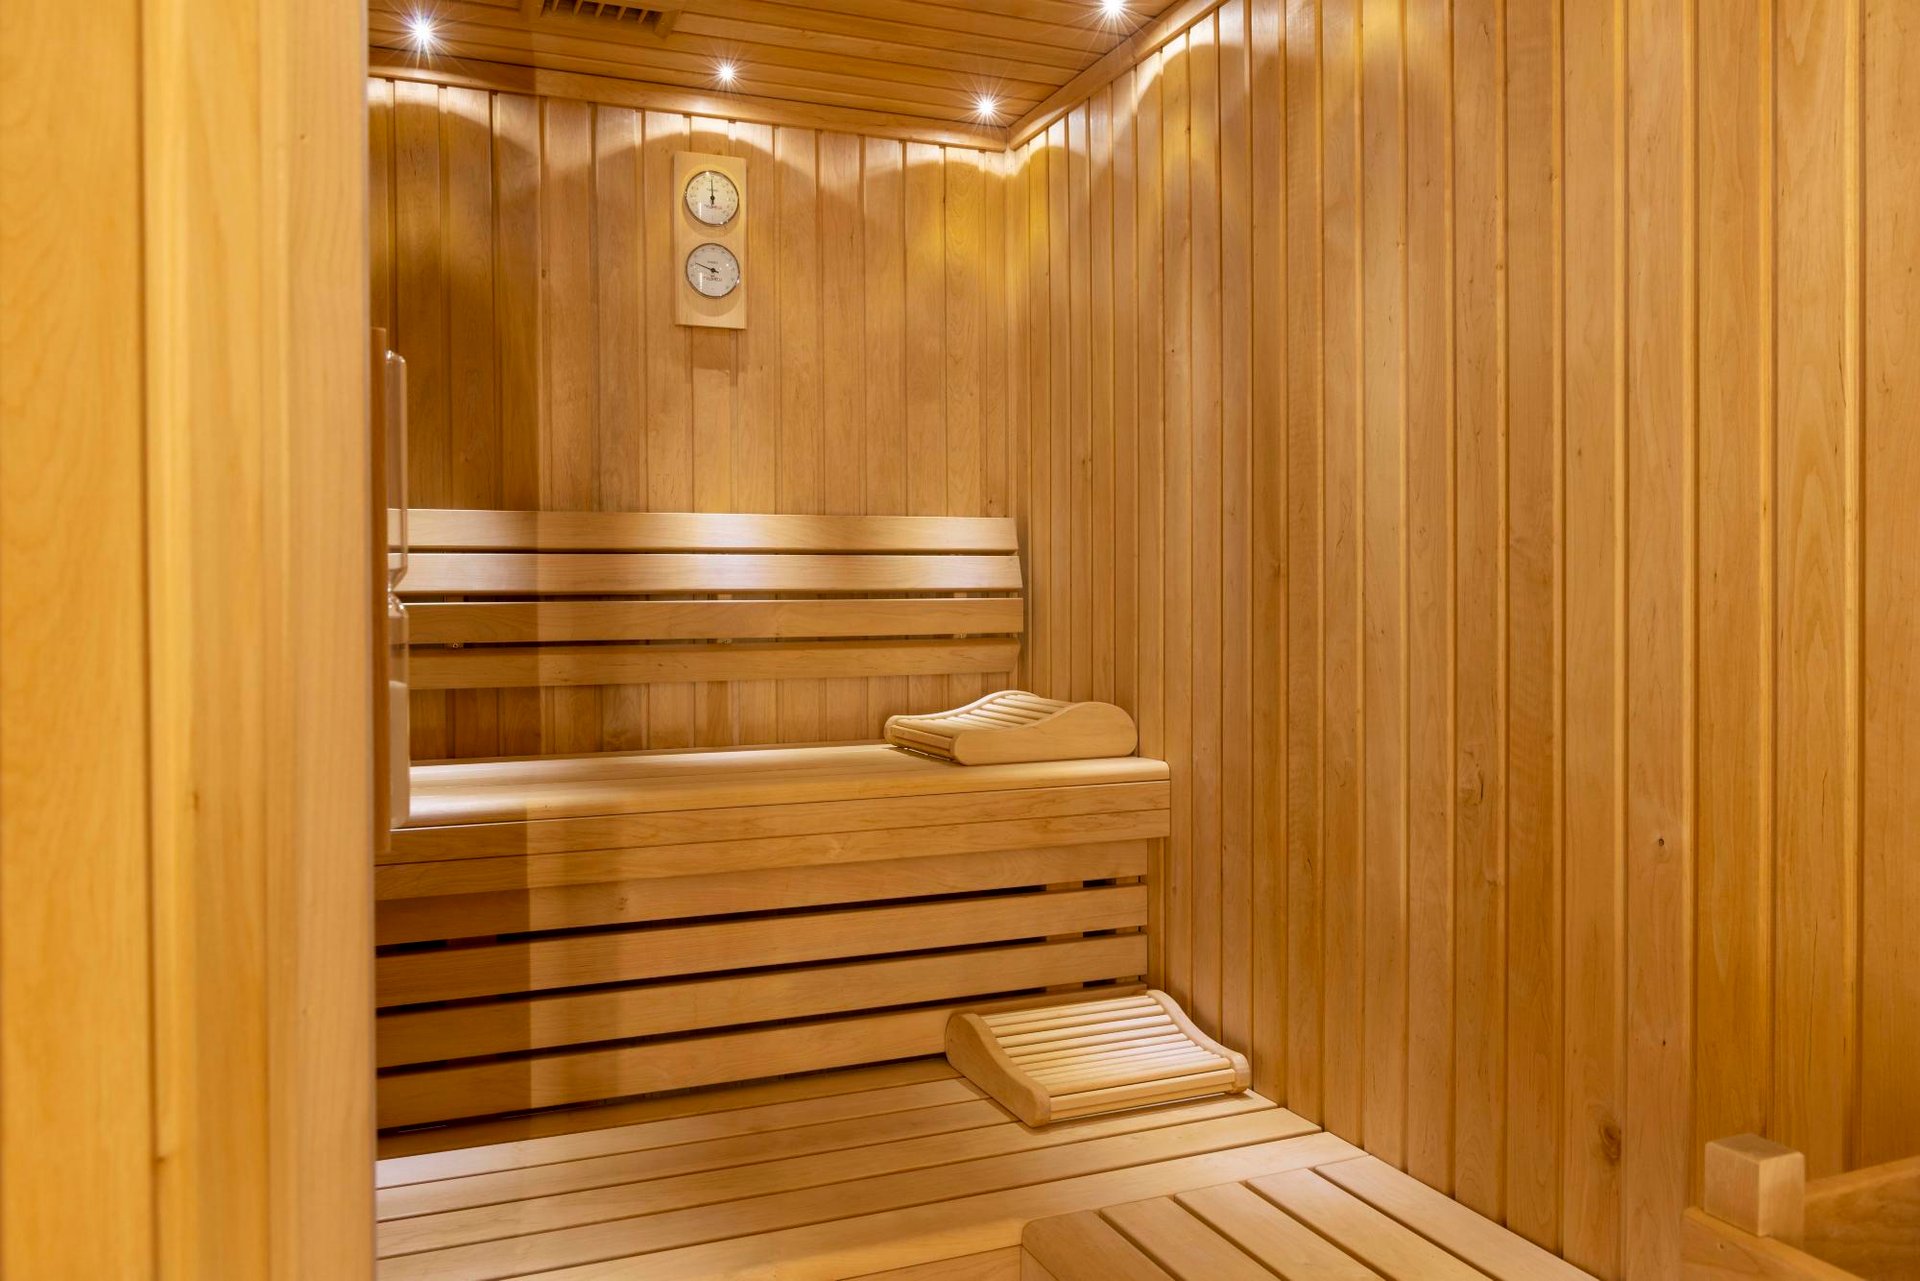 Hôtel Le 12 | Hôtel sauna Paris